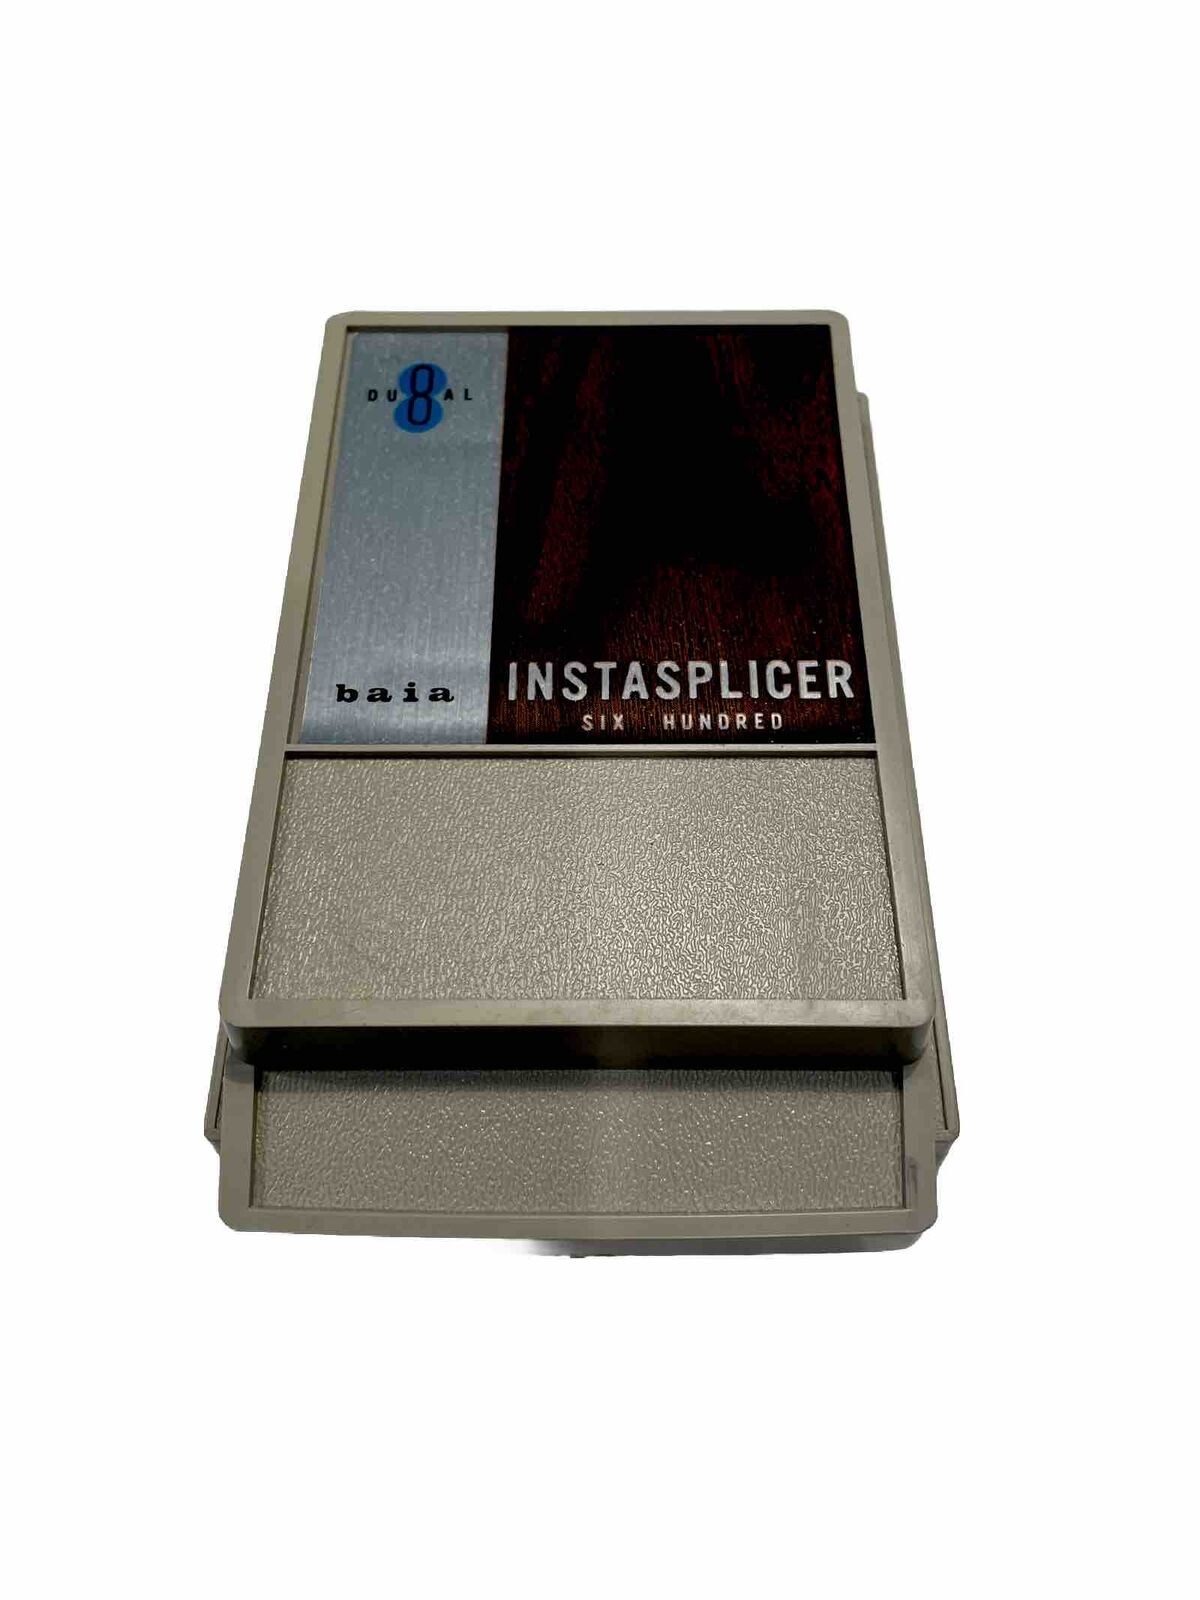 Baia DUAL 8 INSTASPLICER Six Hundred Vintage Super 8 8mm & 16mm Film Splicer